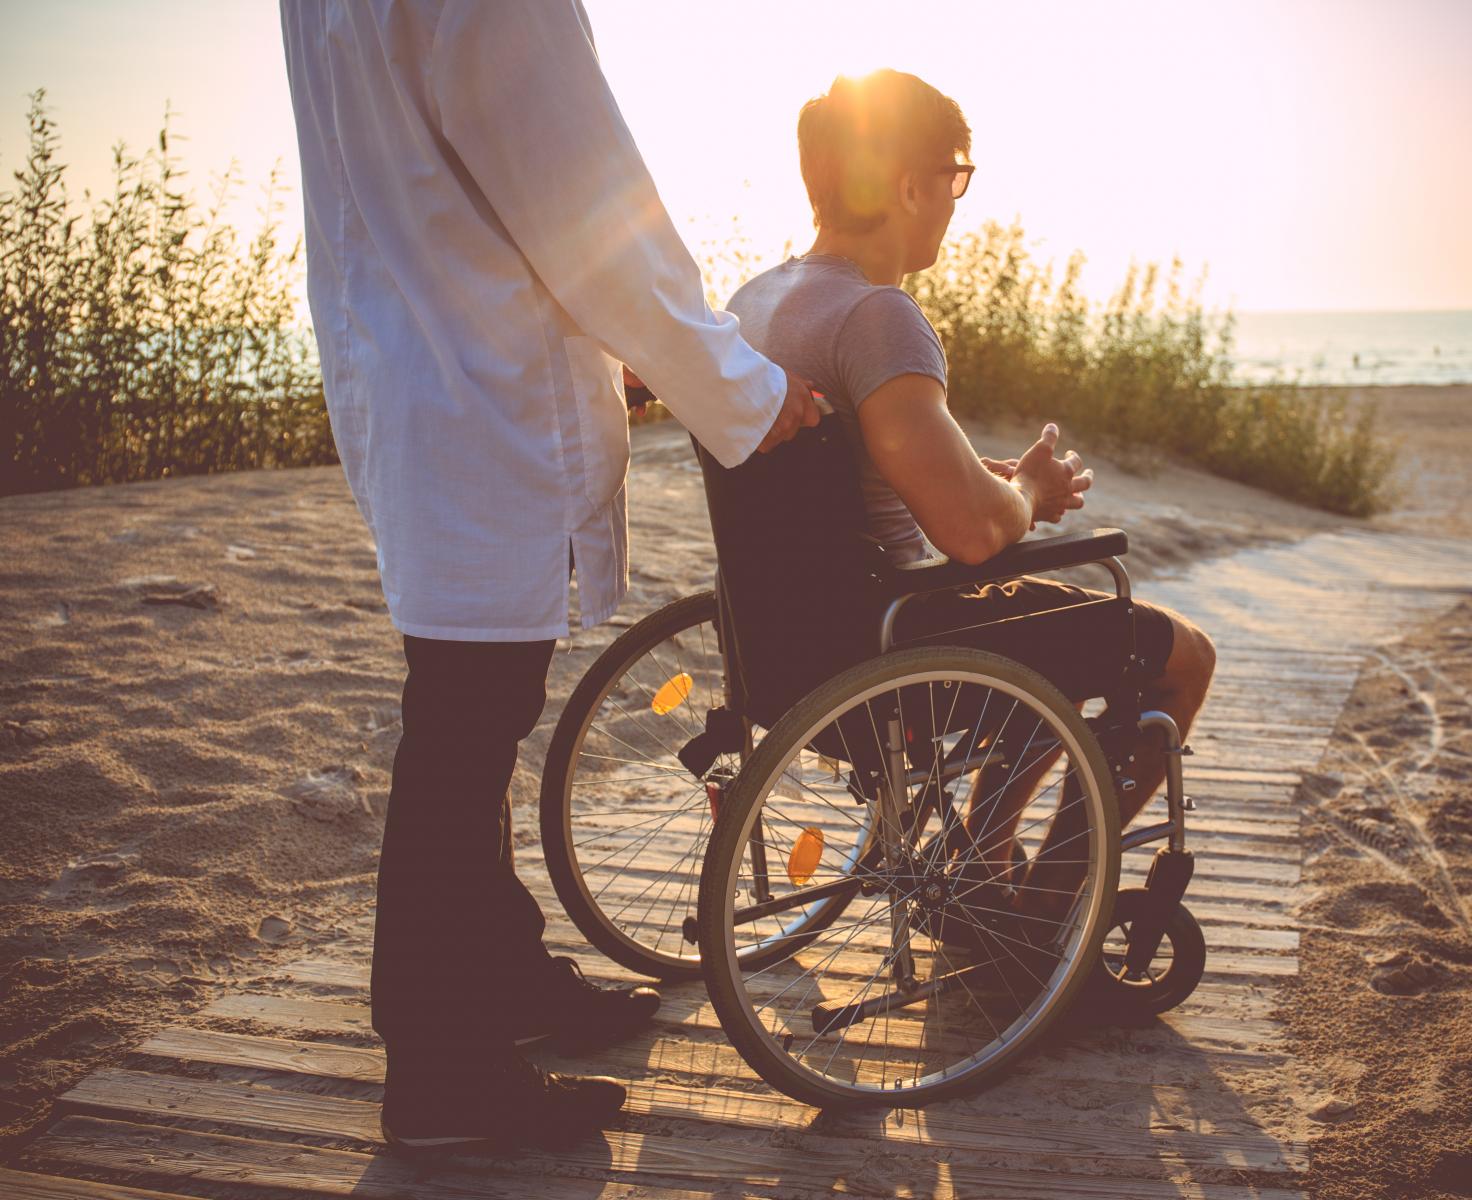 Szkolenie dla opiekunów i rodzin osób niepełnosprawnych - Wspieraj mądrze, czyli jak?